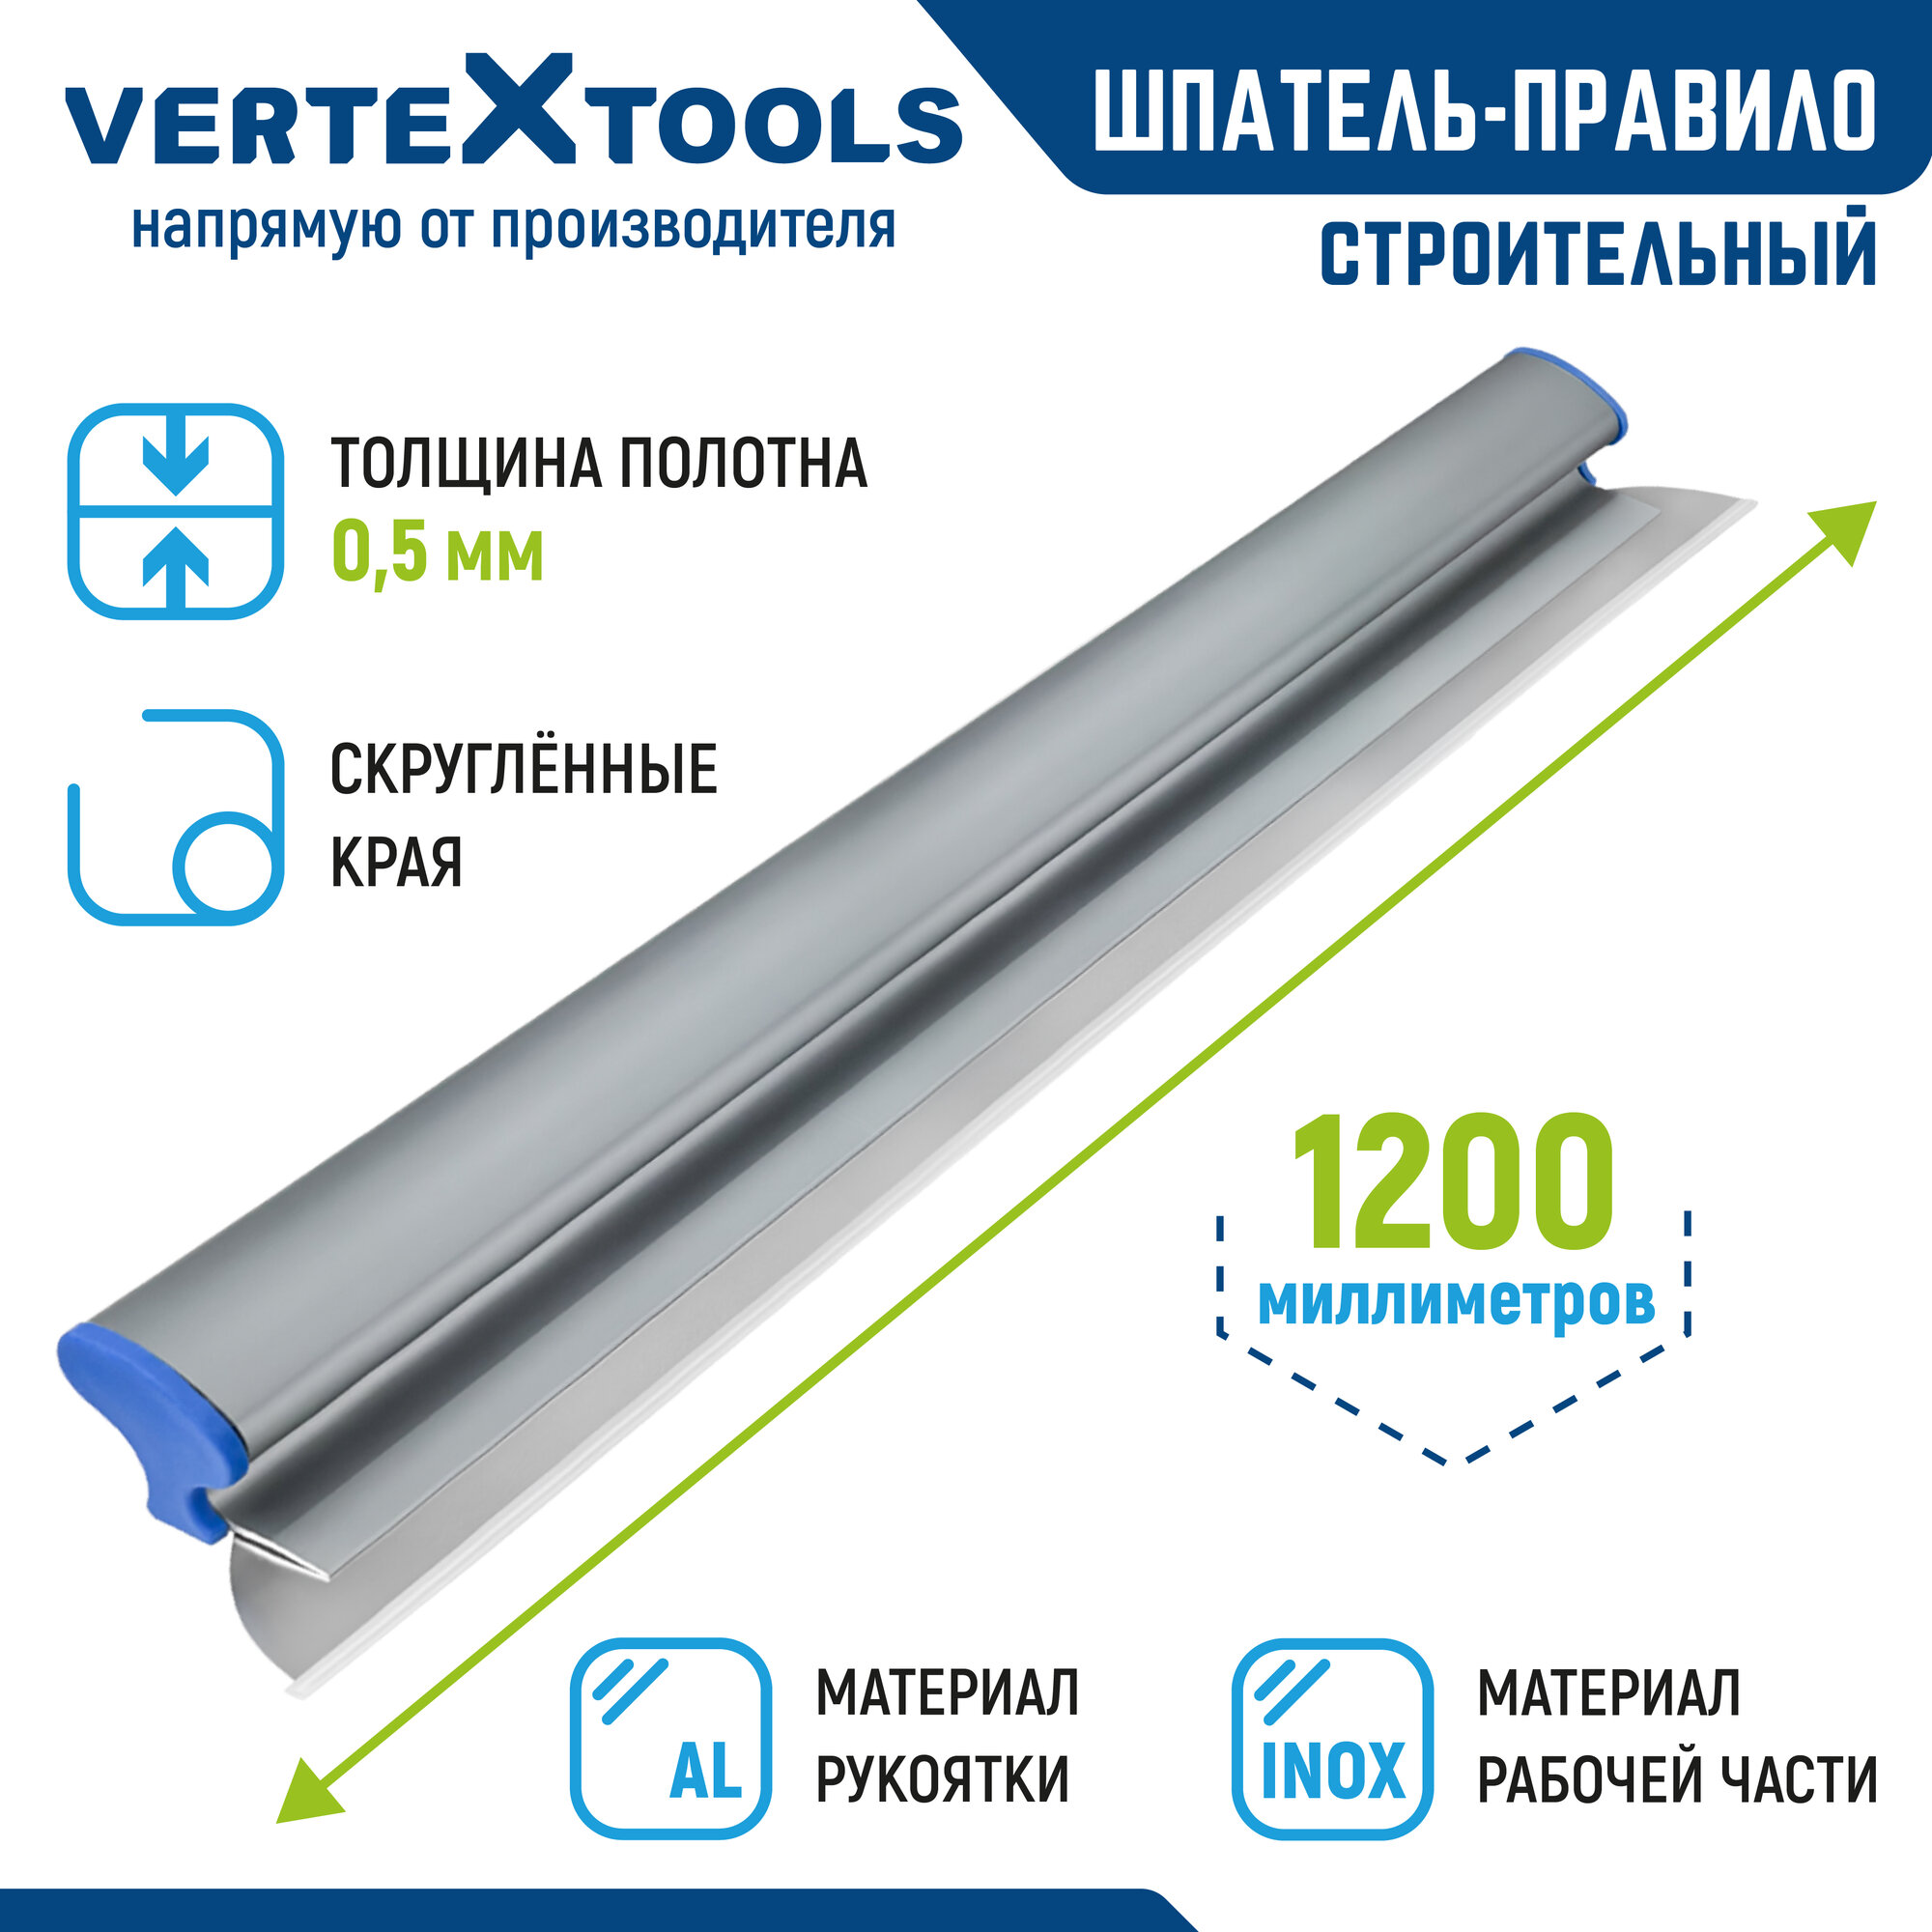 Шпатель-правило строительный VertexTools 1200 мм. нержавеющая сталь